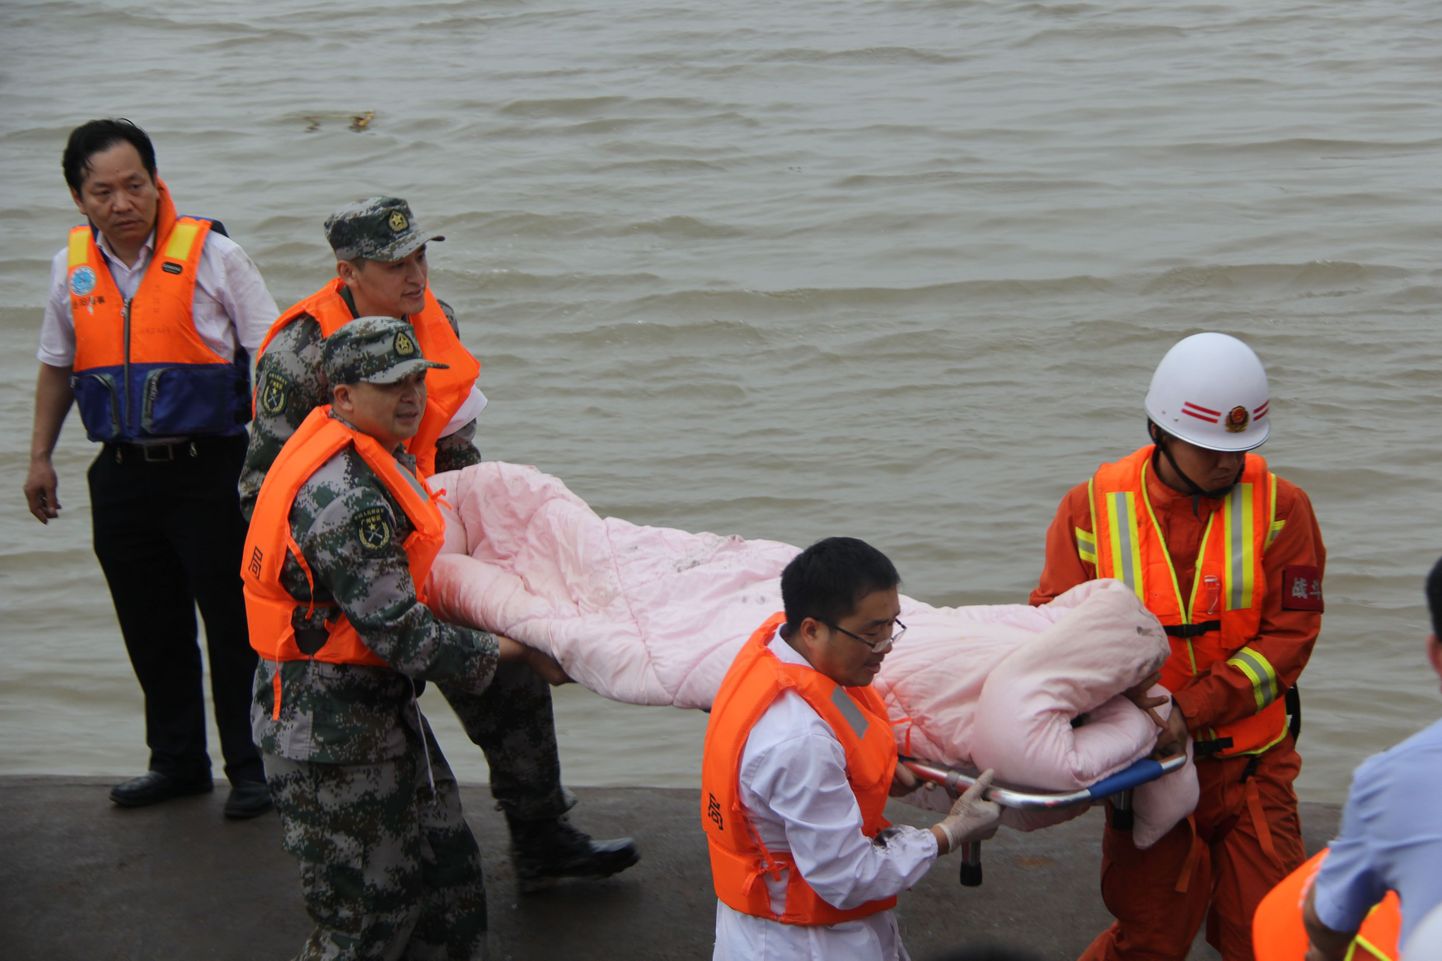 Hiinas Jangtse jõel leidis aset laevaõnnetus, mille tõttu käivitati ulatuslik päästeoperatsioon